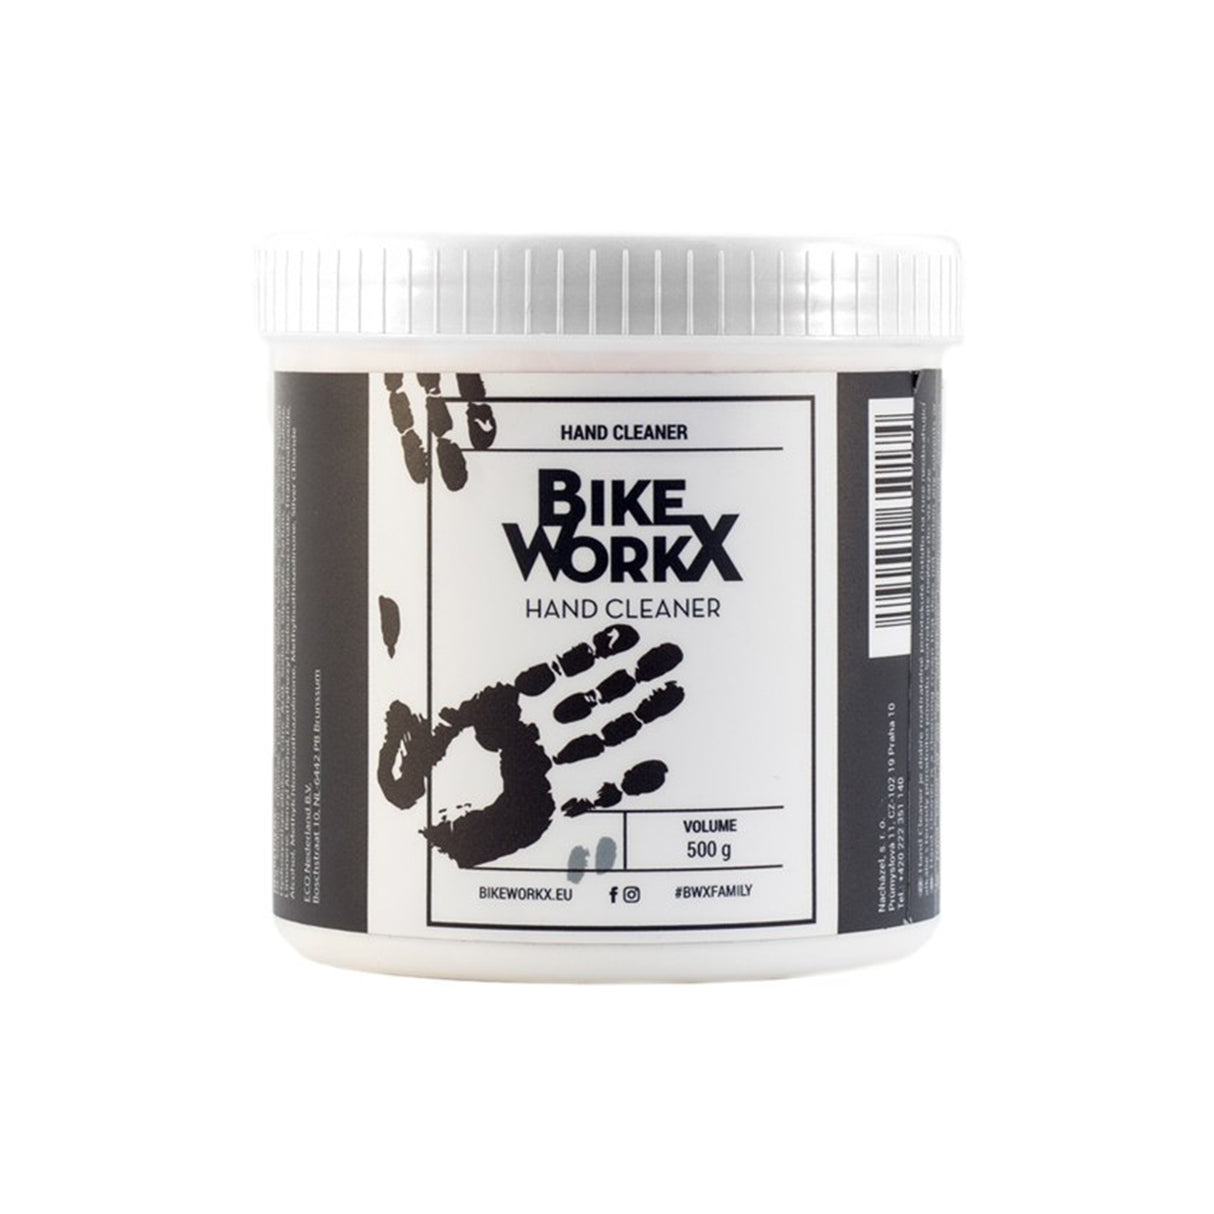 Bike WorkX Hand Cleaner